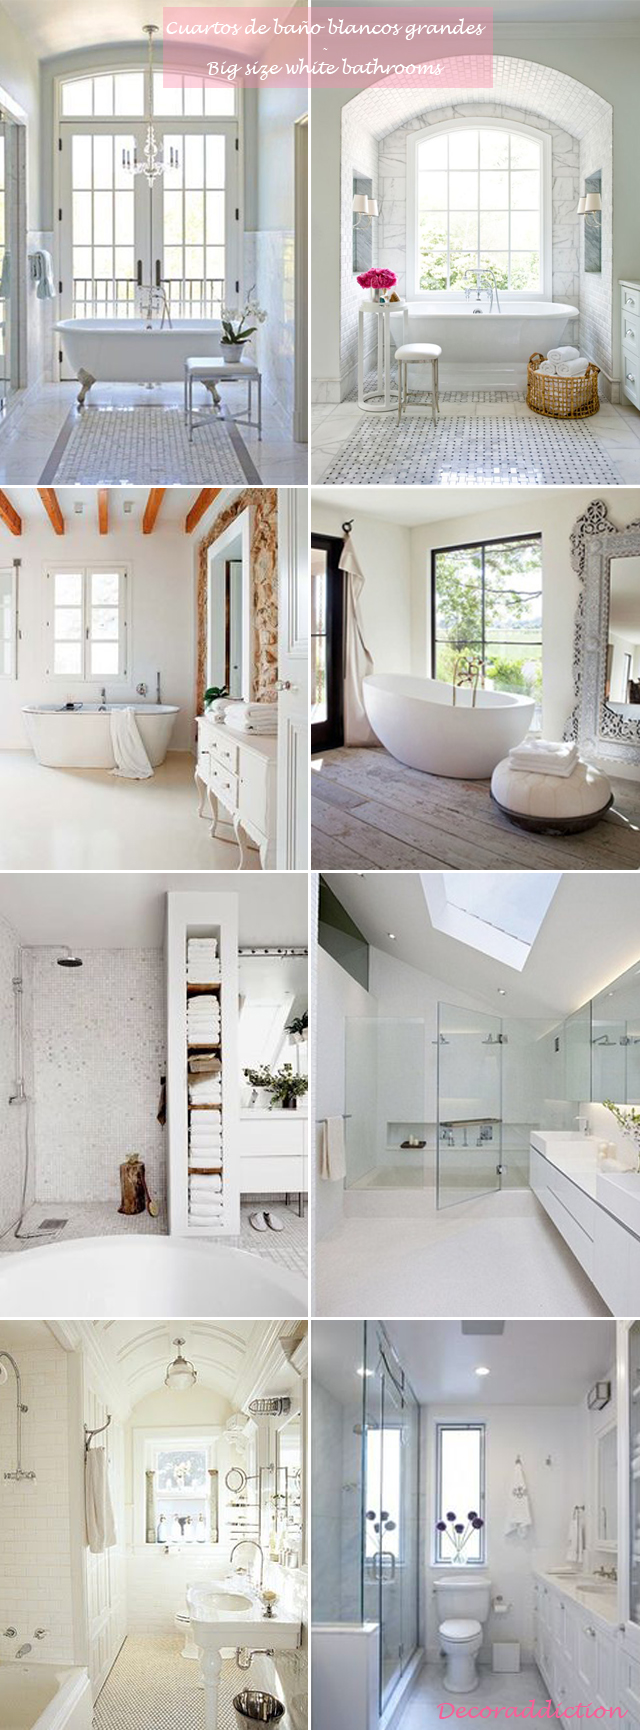 Me encantan los cuartos de baño blancos - I love white bathrooms_grandes